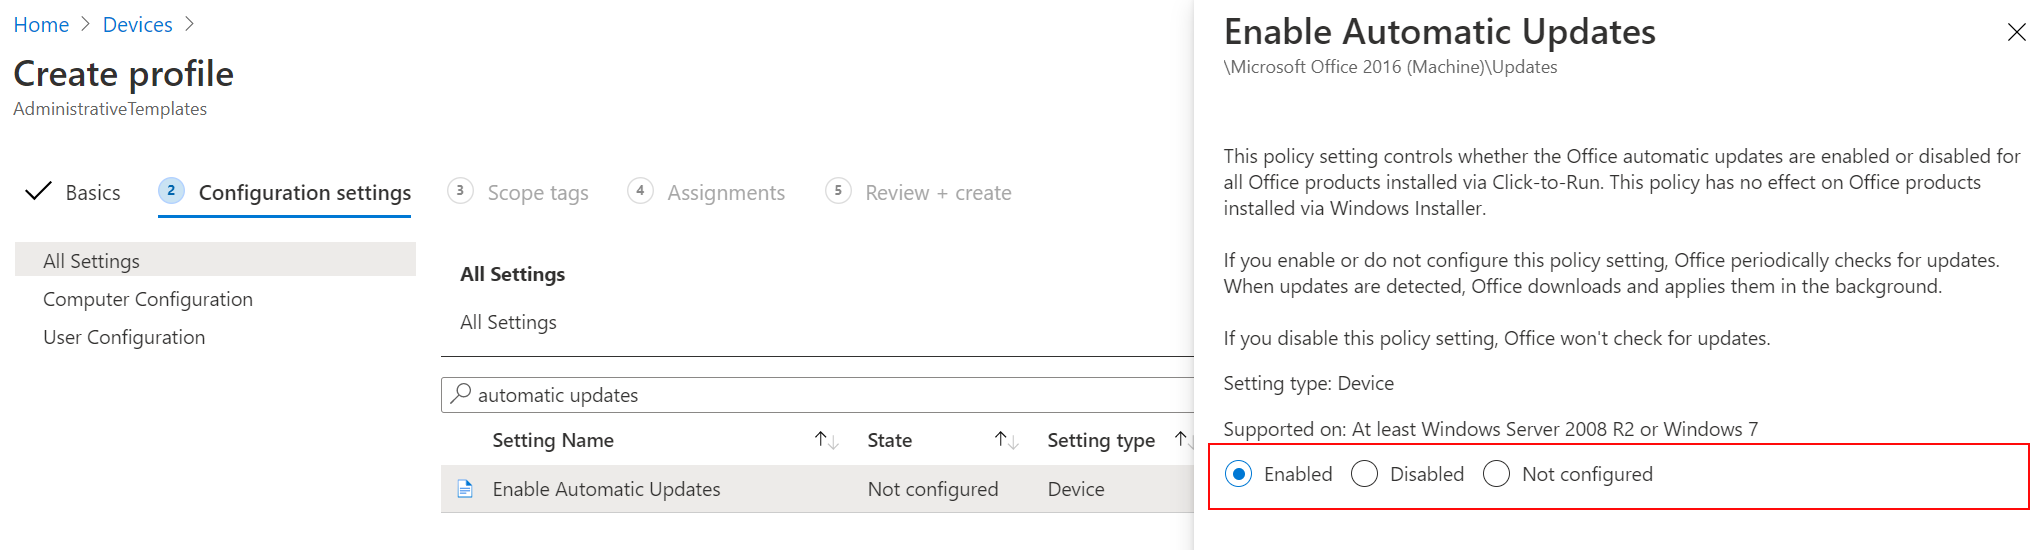 Captura de pantalla que muestra cómo habilitar las actualizaciones automáticas de Office mediante una plantilla administrativa en Microsoft Intune.